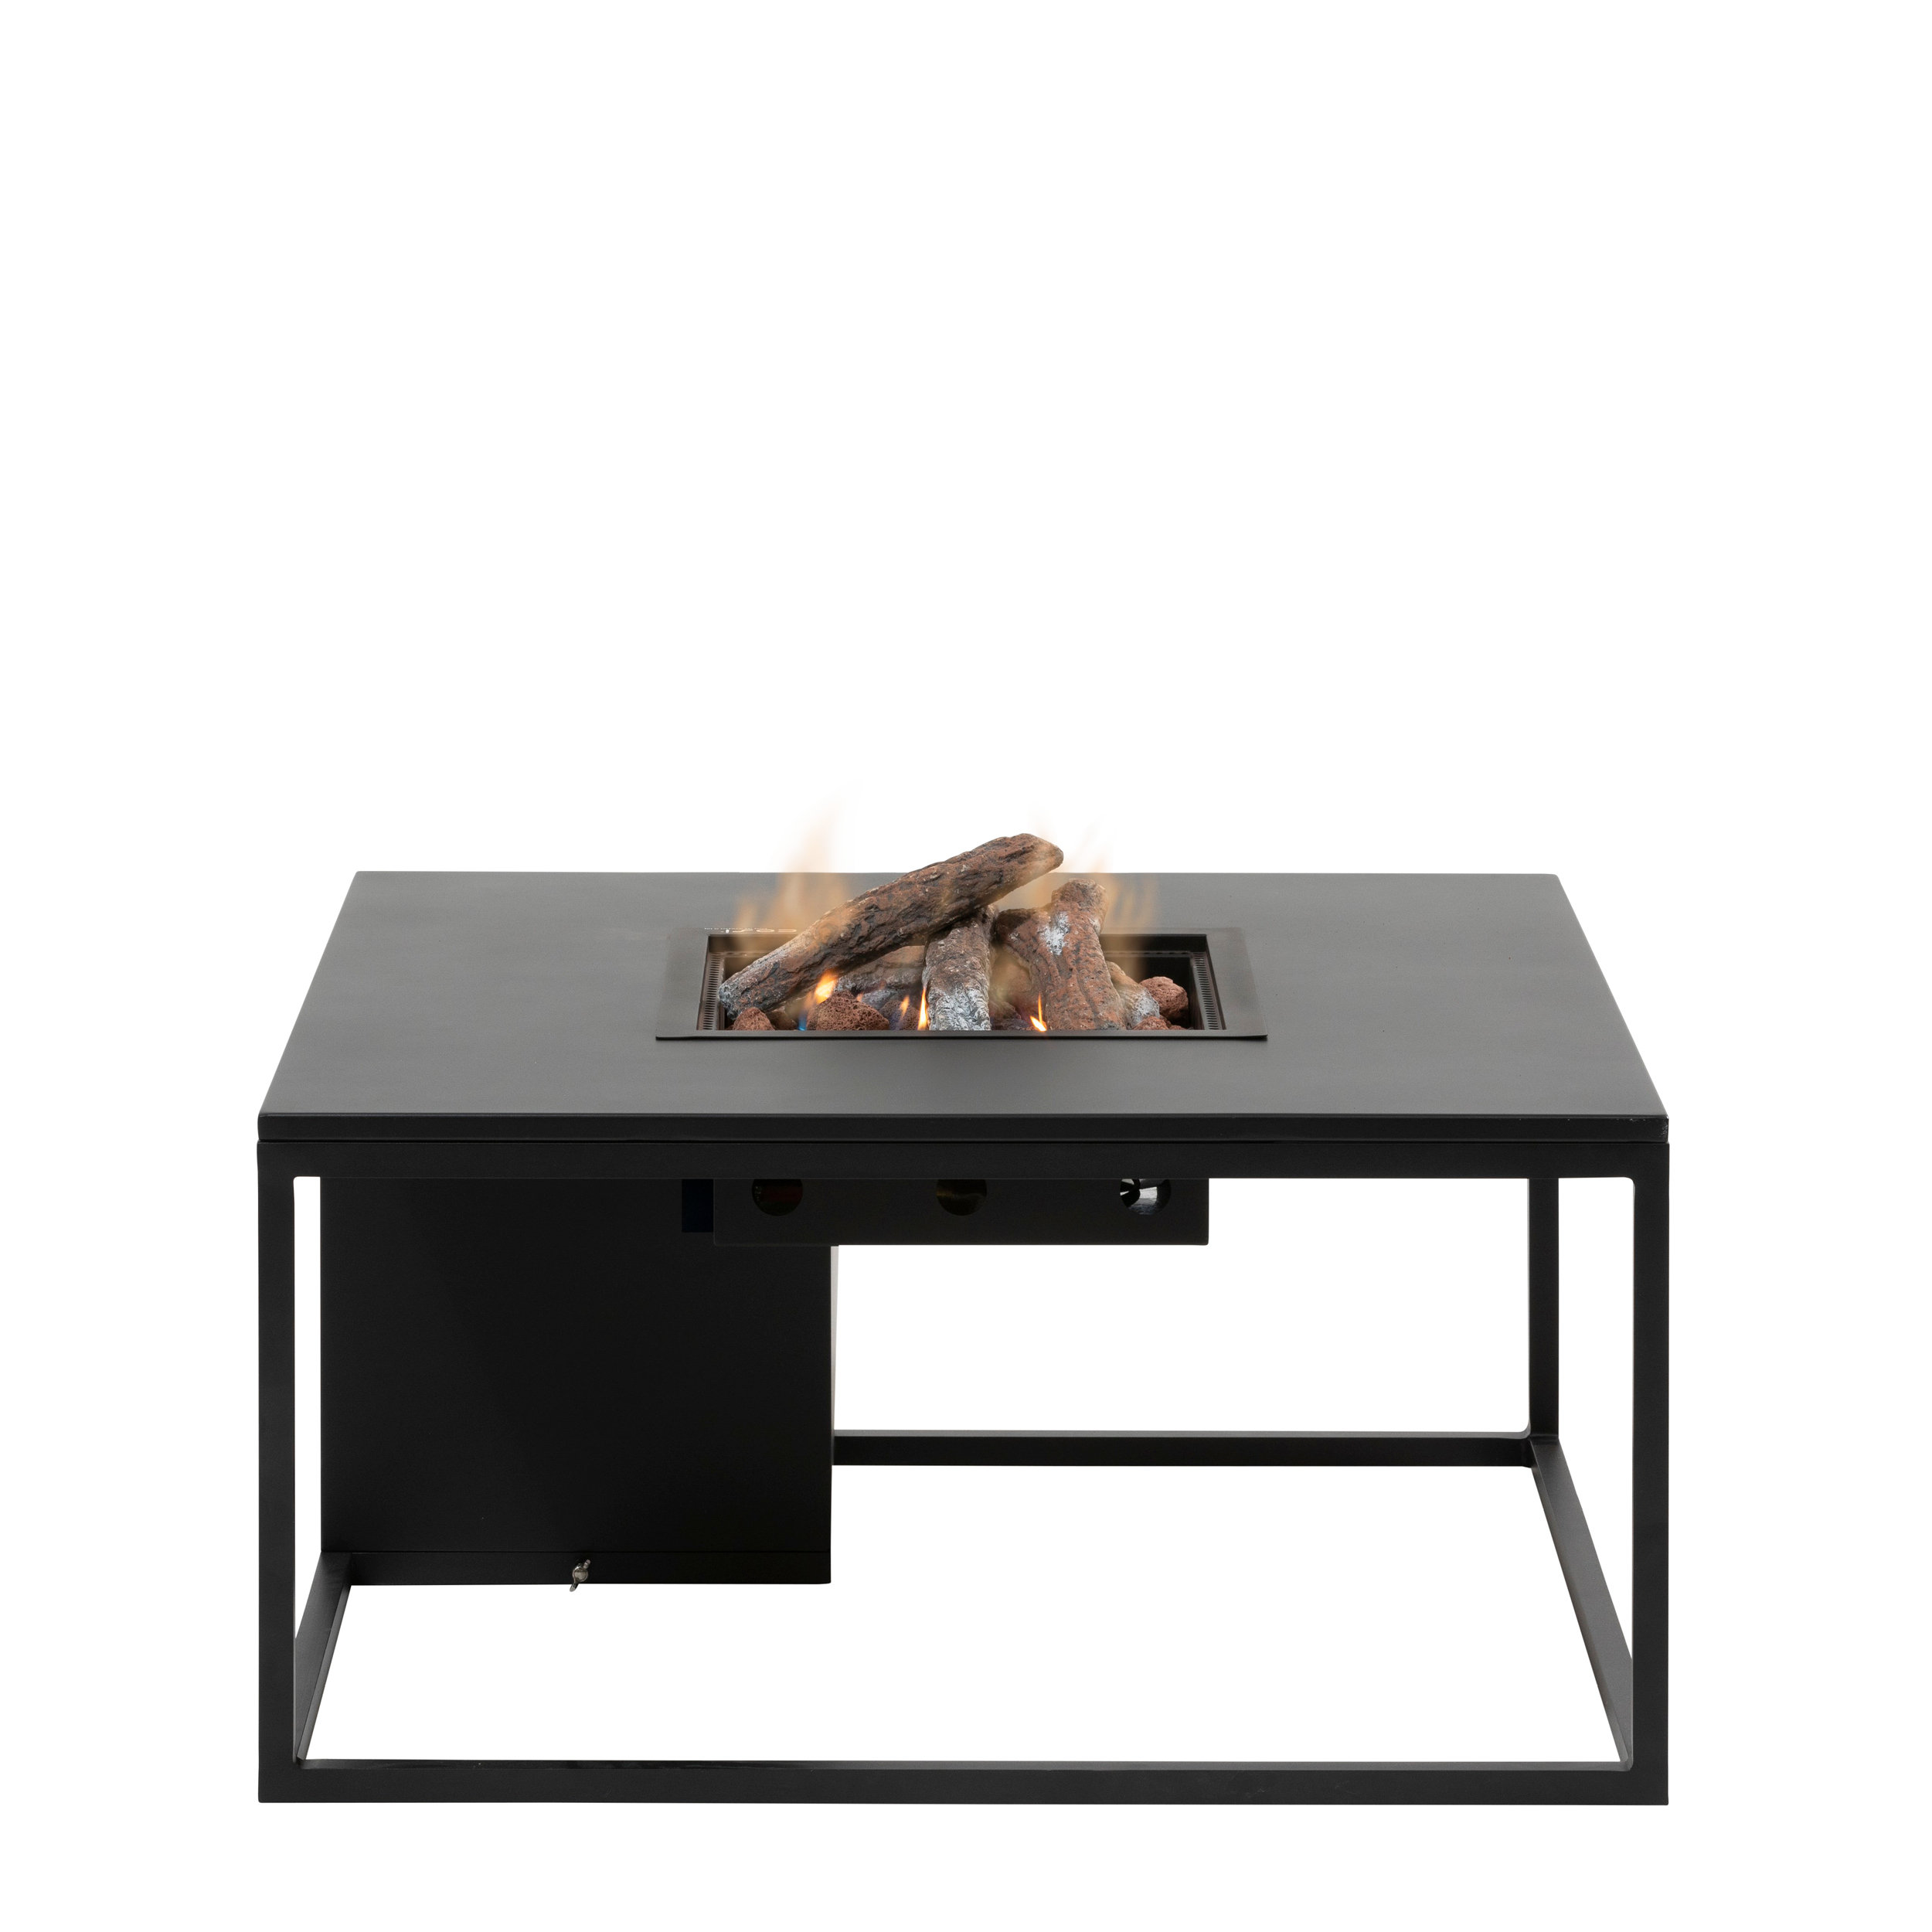 Stôl s plynovým ohniskom COSI- typ Cosiloft 100 čierny rám / čierna doska